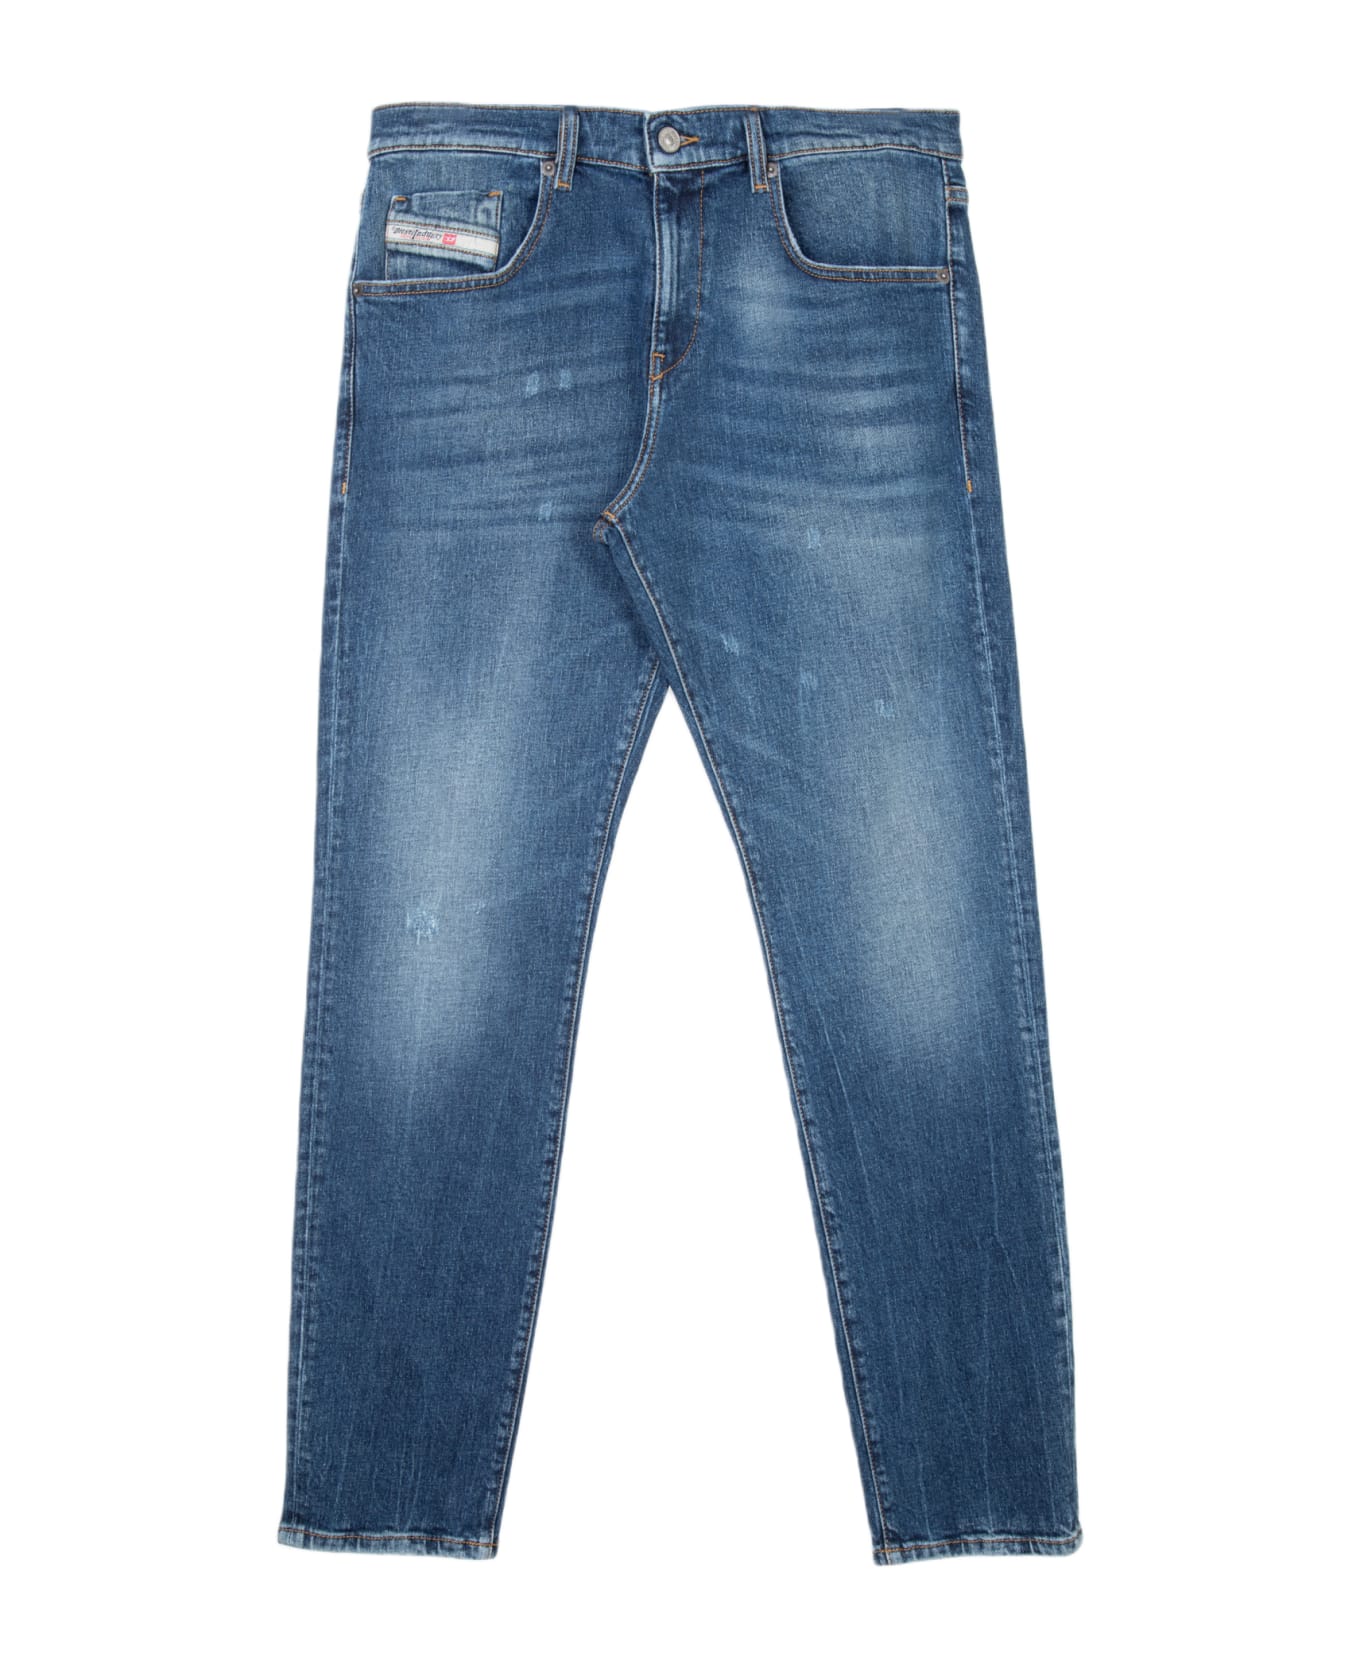 Diesel 2019 D-strukt L.30 Washed medium blue slim fit jeans - 2019 D-Strukt - Denim blu